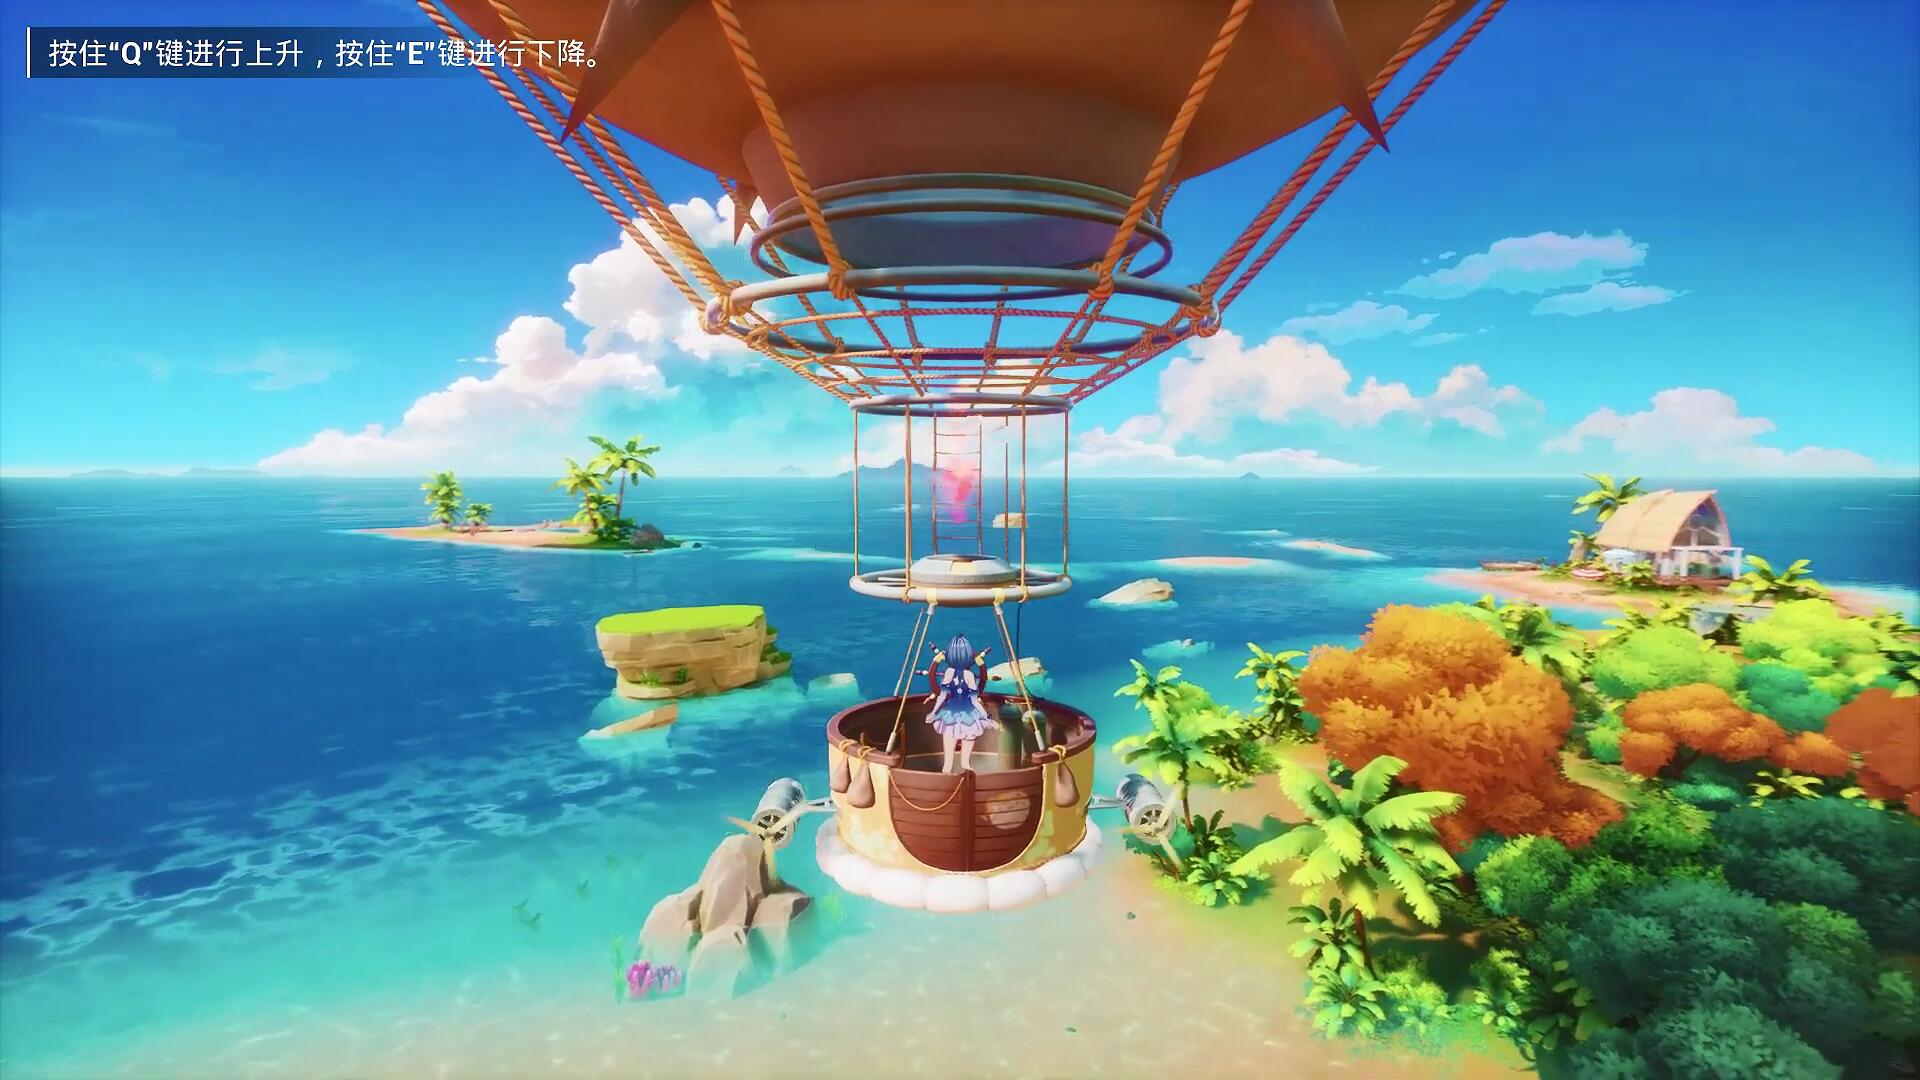 歡迎來到西黎島《魔鏡2》追加新場景、熱氣球載具